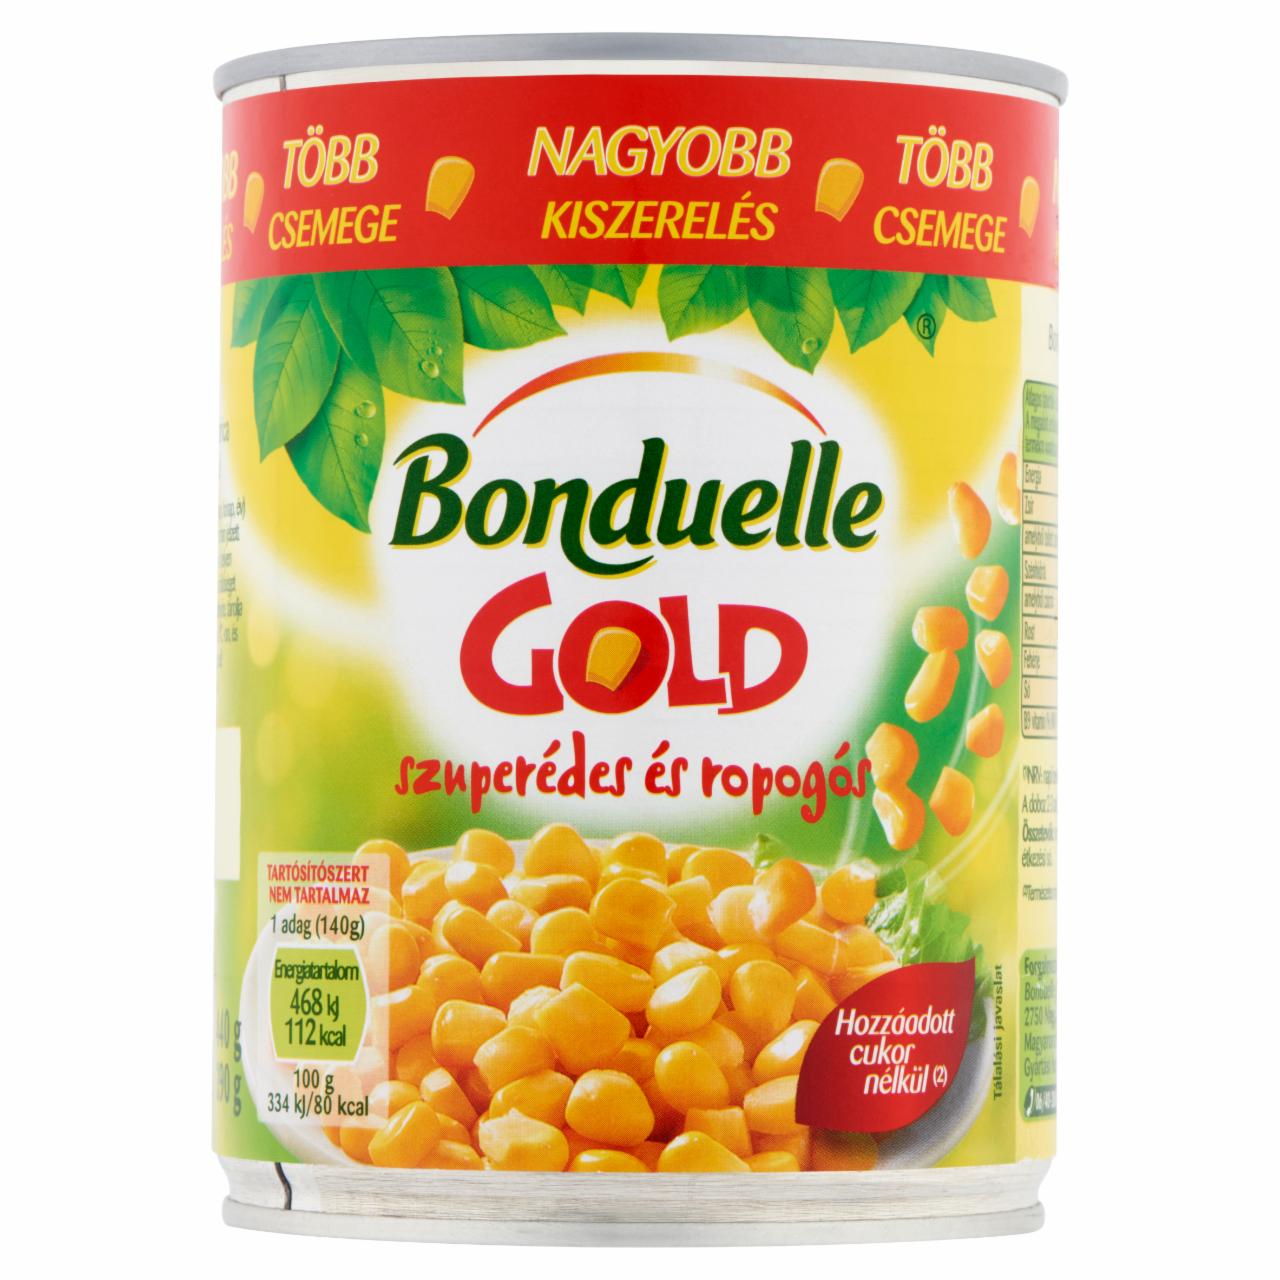 Képek - Bonduelle Gold morzsolt csemegekukorica 440 g